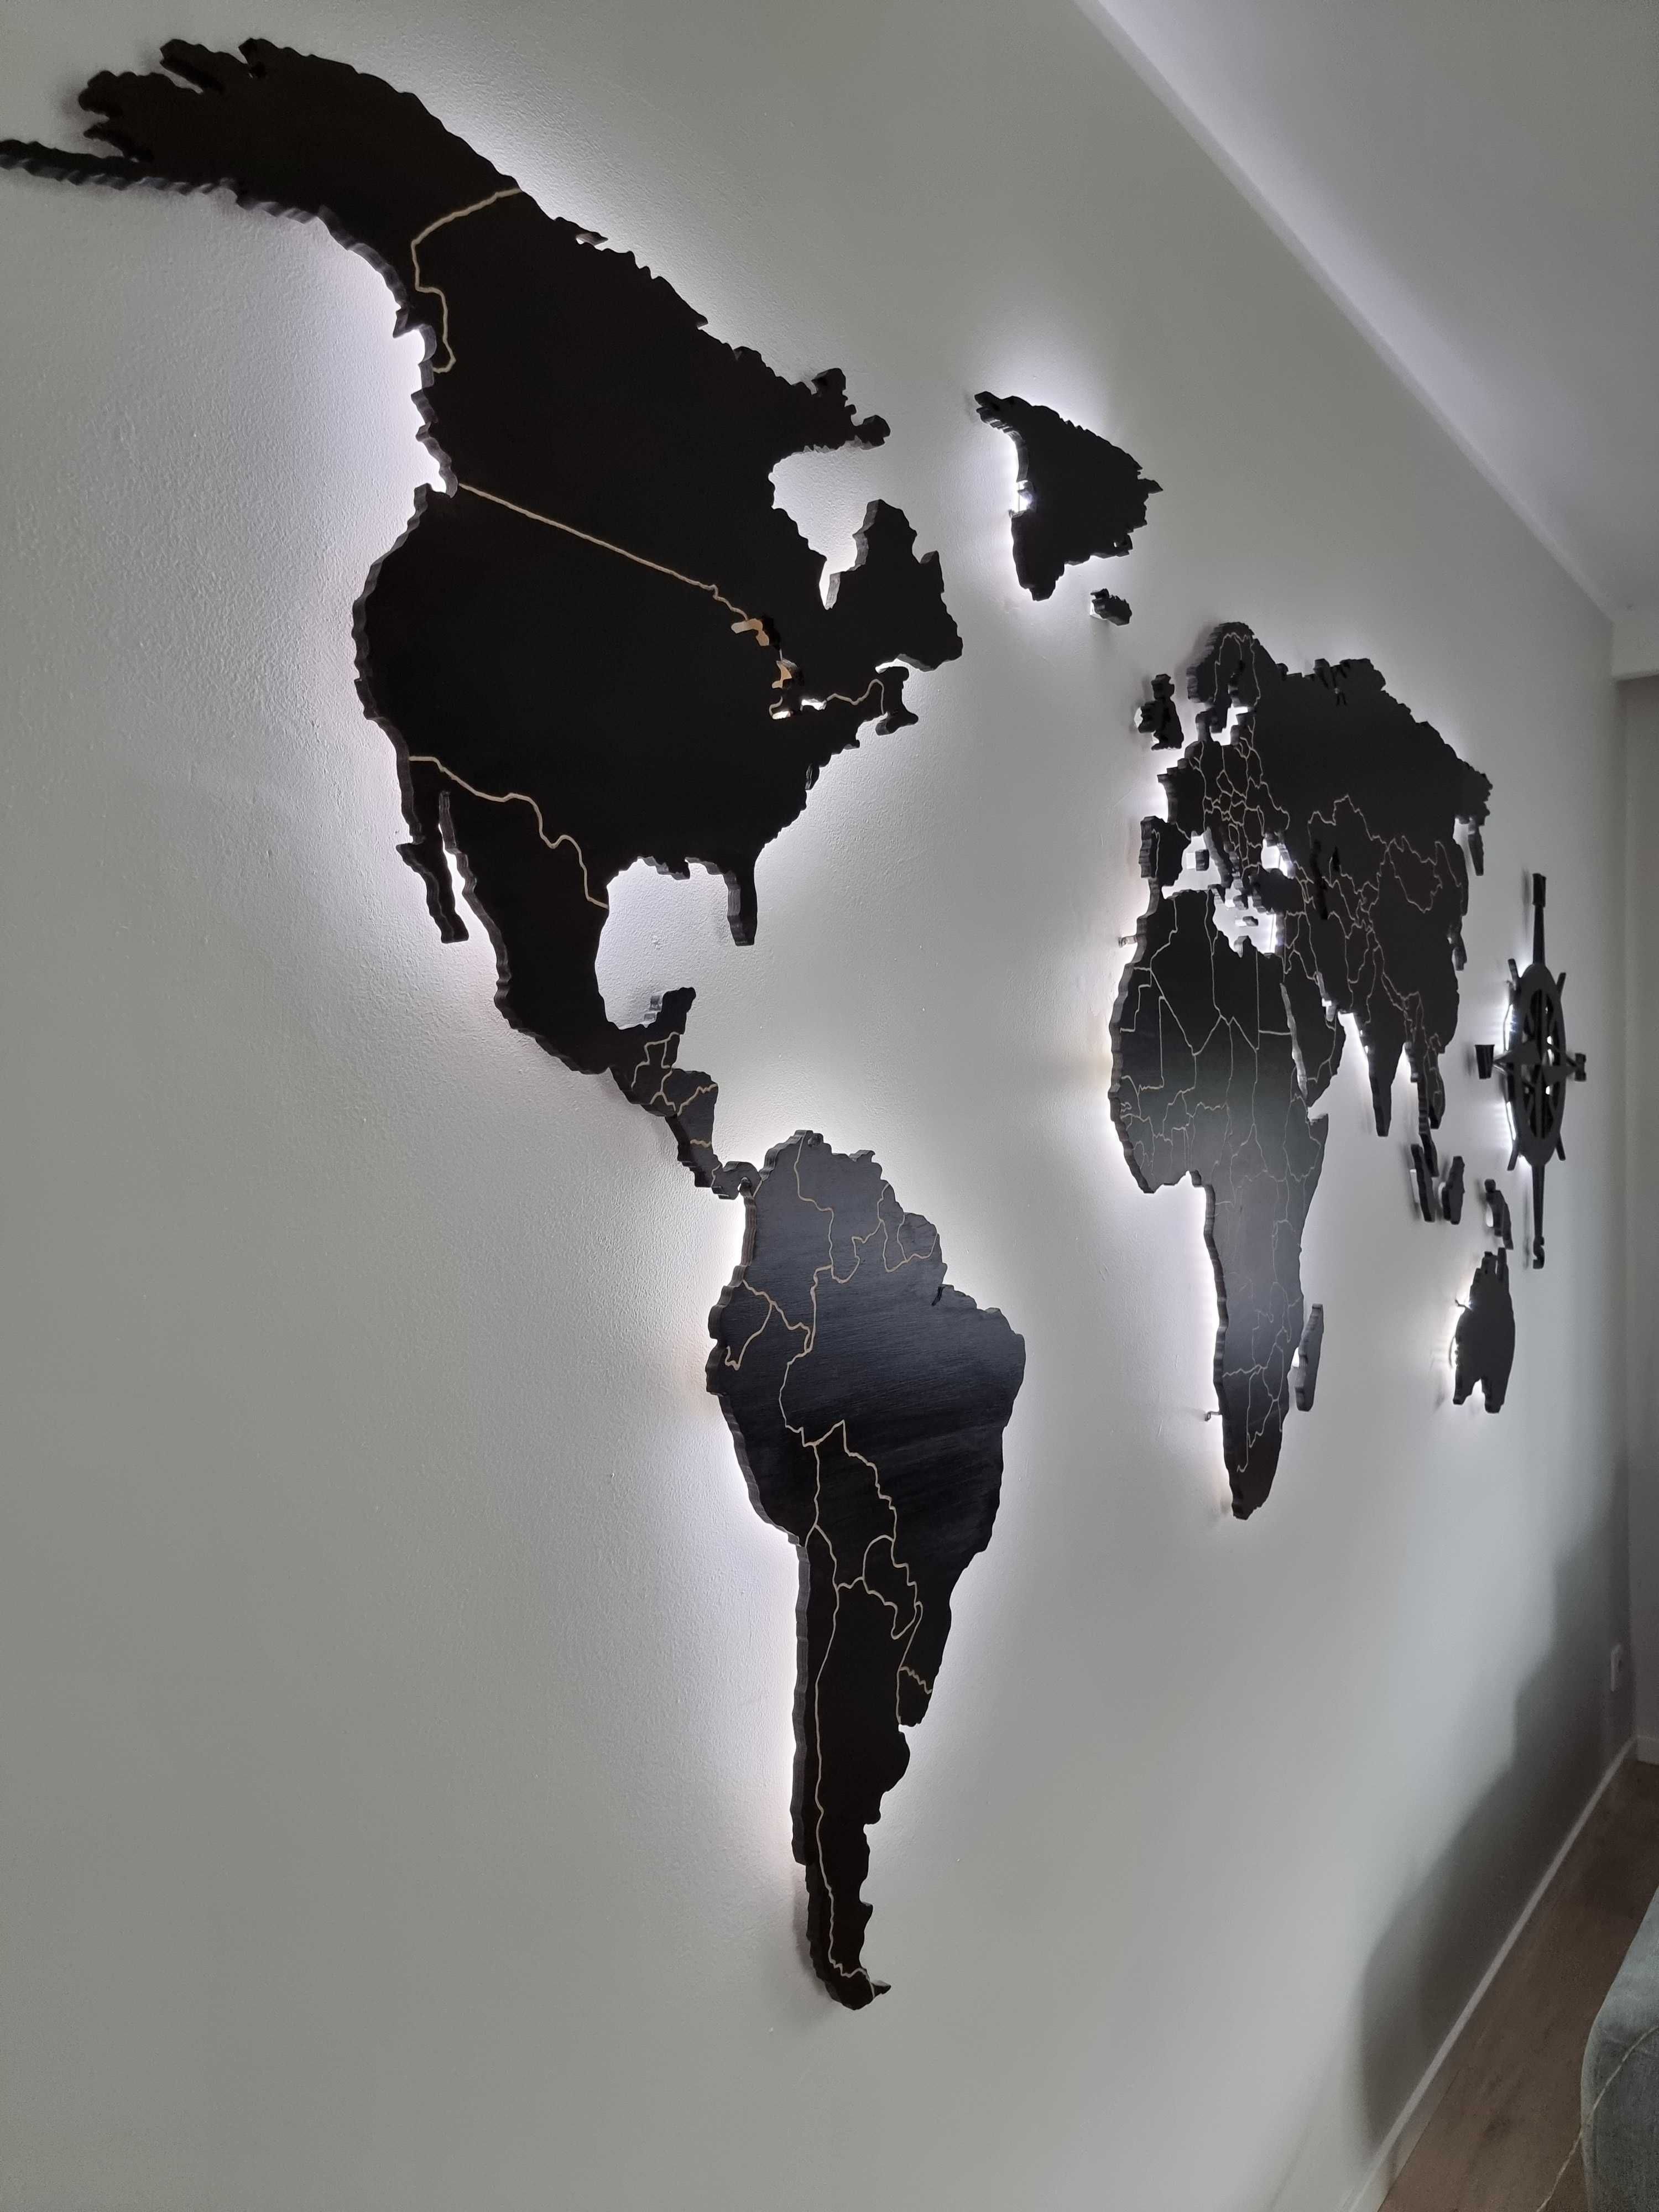 Mapa świata podświetlana LED